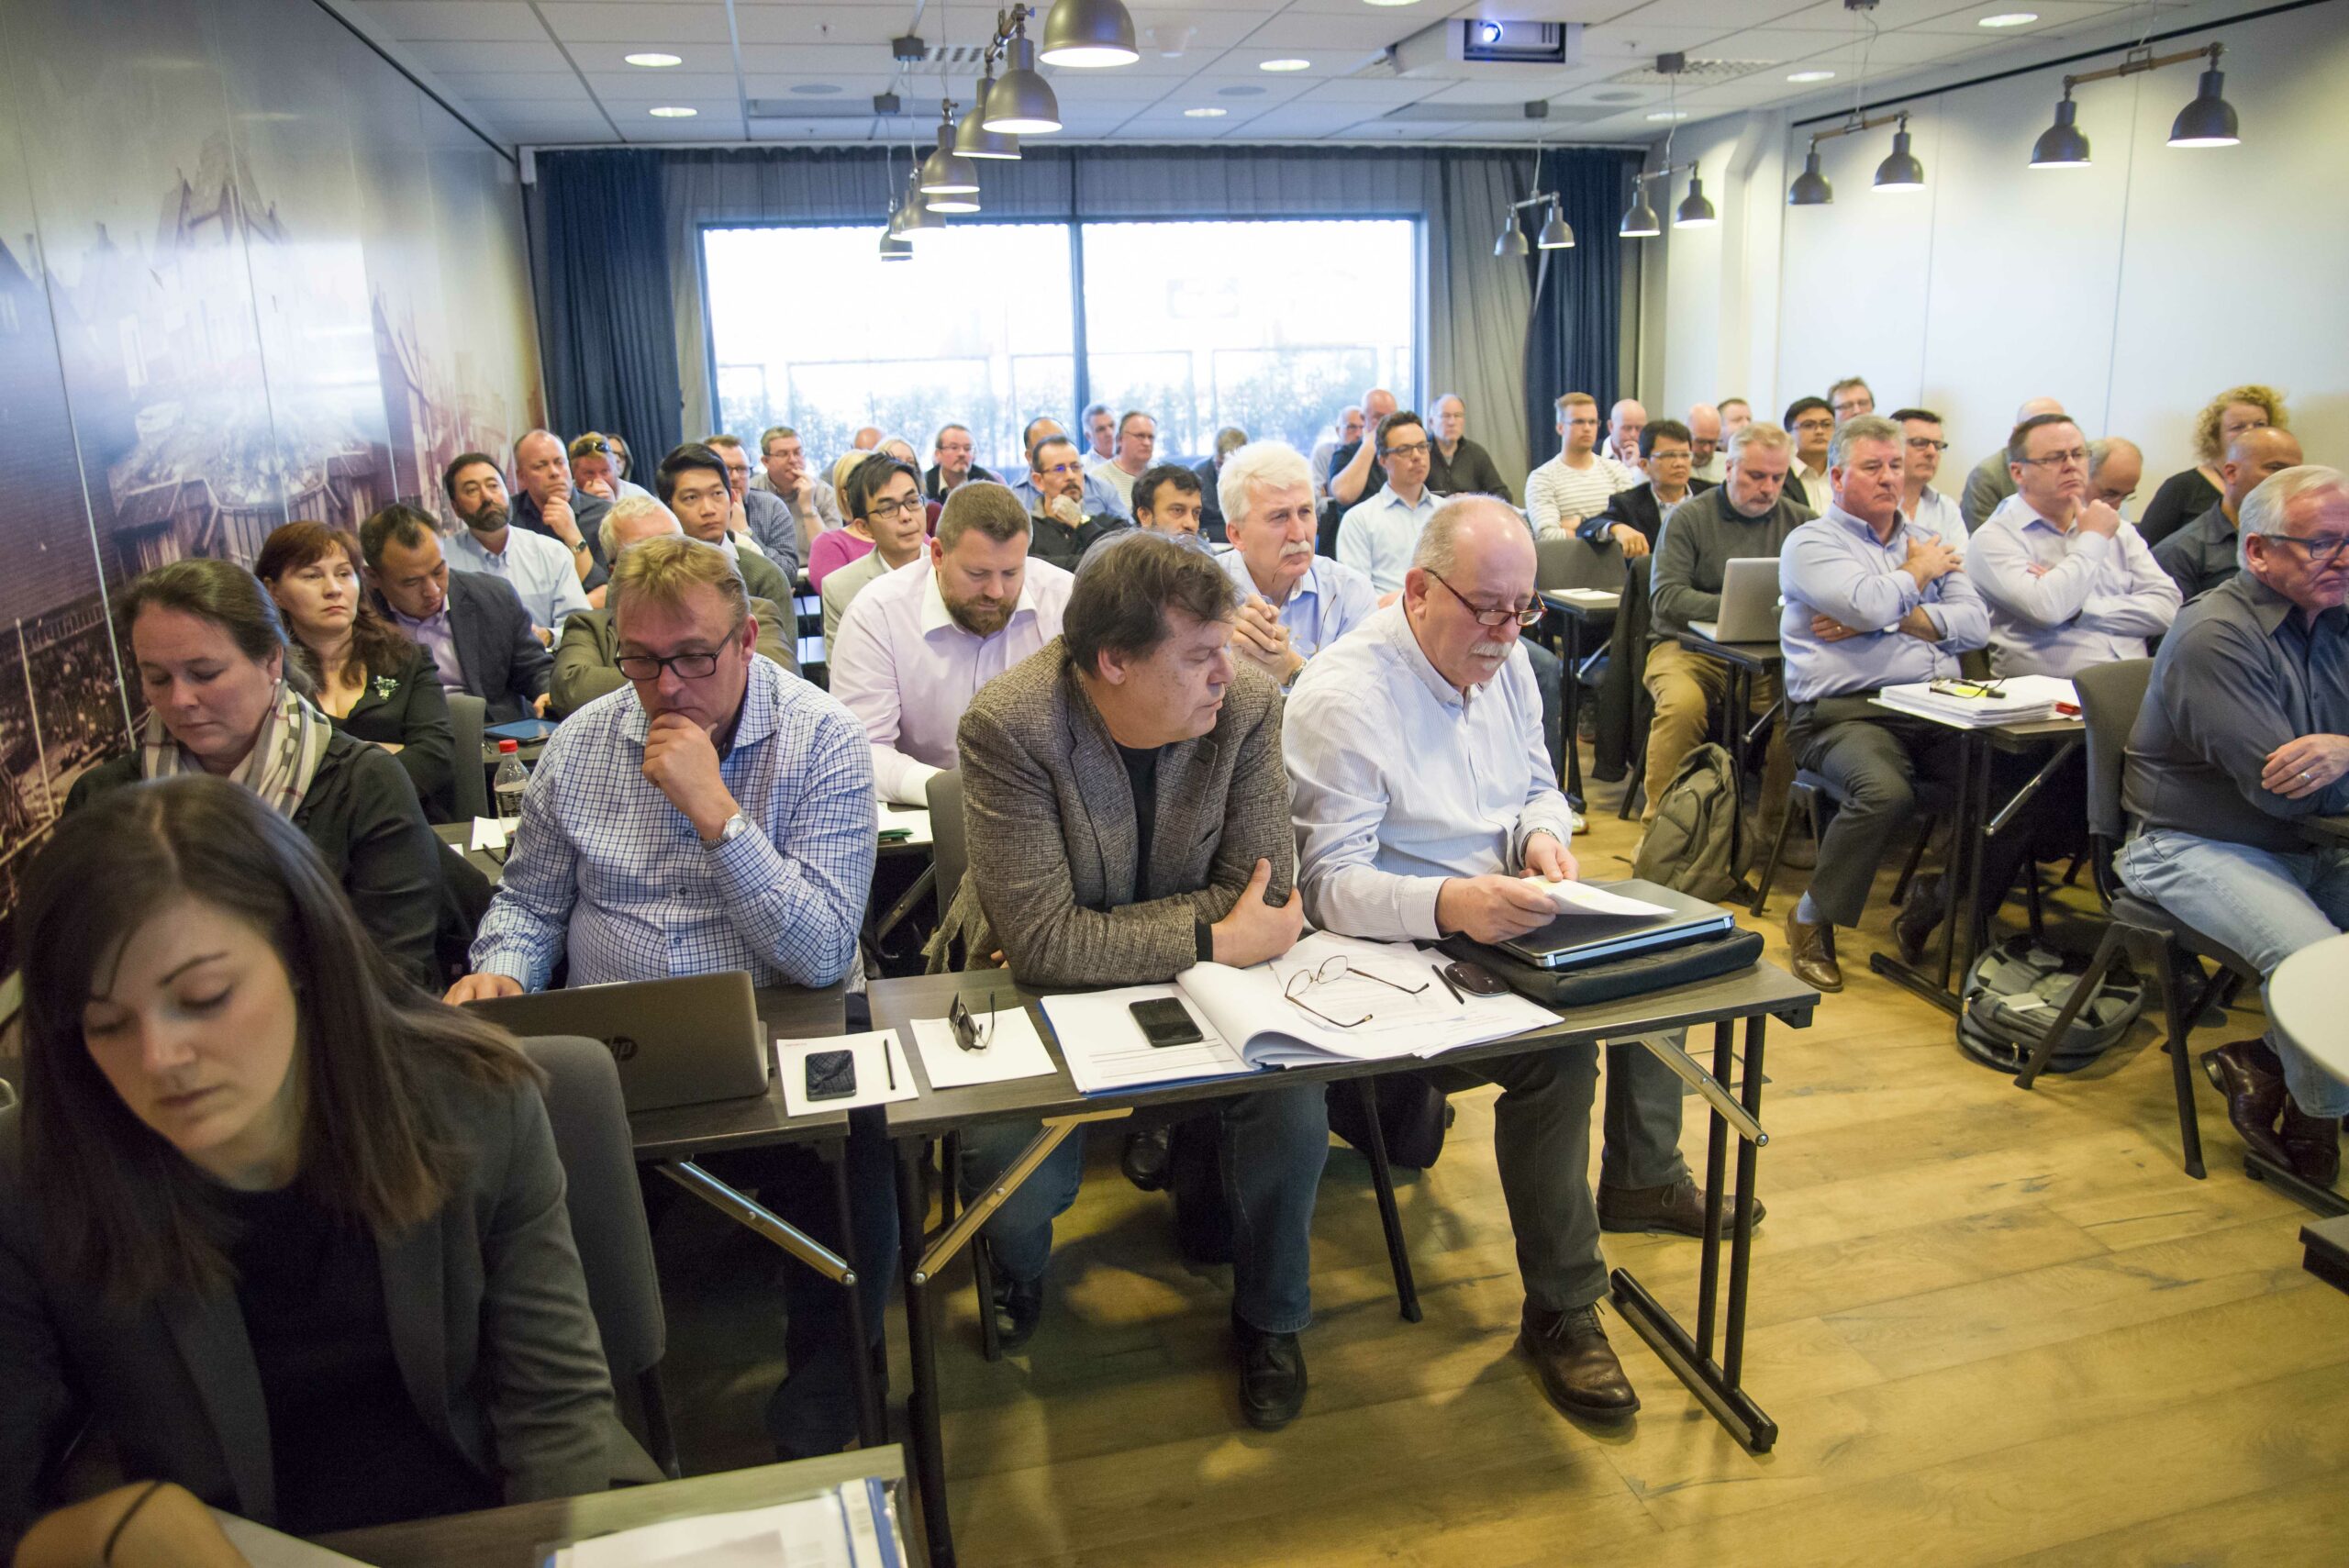 Drøy 50 personer fra hele verden møtes på ITF-møtet i Stavanger 26-27. april. Foto: Atle Espen Helgesen